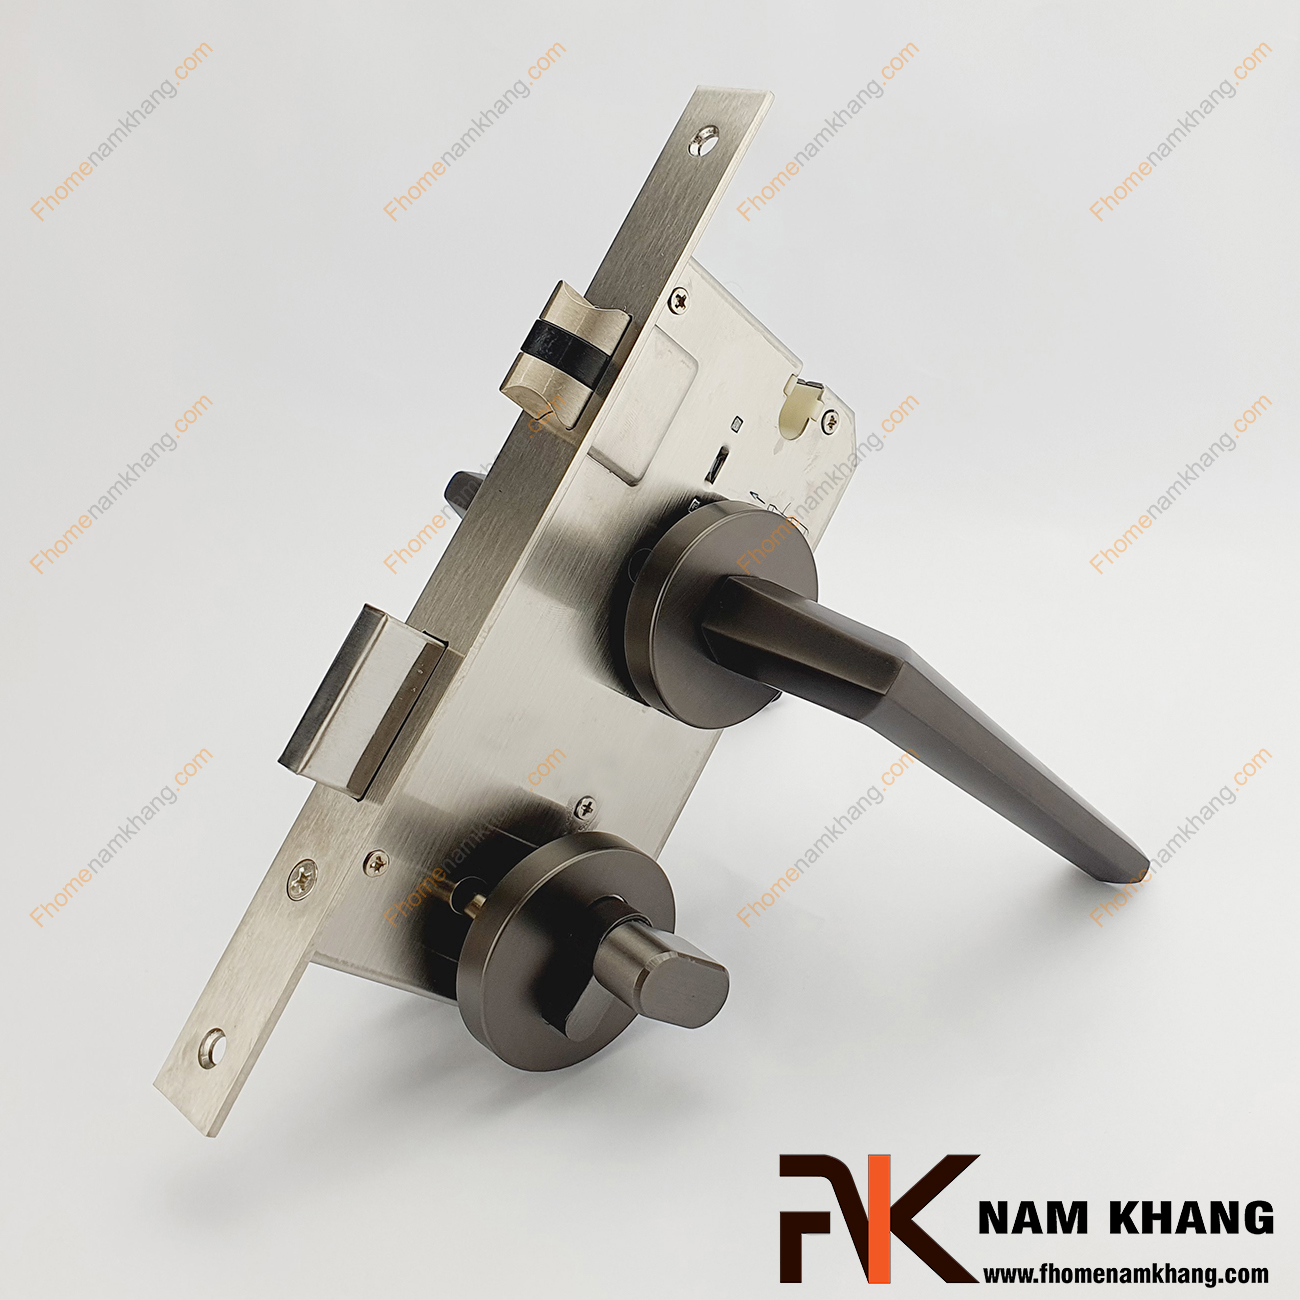 Khóa cửa phân thể bằng hợp kim cao cấp màu xám NK573-X có thiết kế phần ốp khóa và tay gạt riêng biệt, khá nhỏ gọn và tạo được sự nổi bật độc đáo của một dòng khóa cửa.